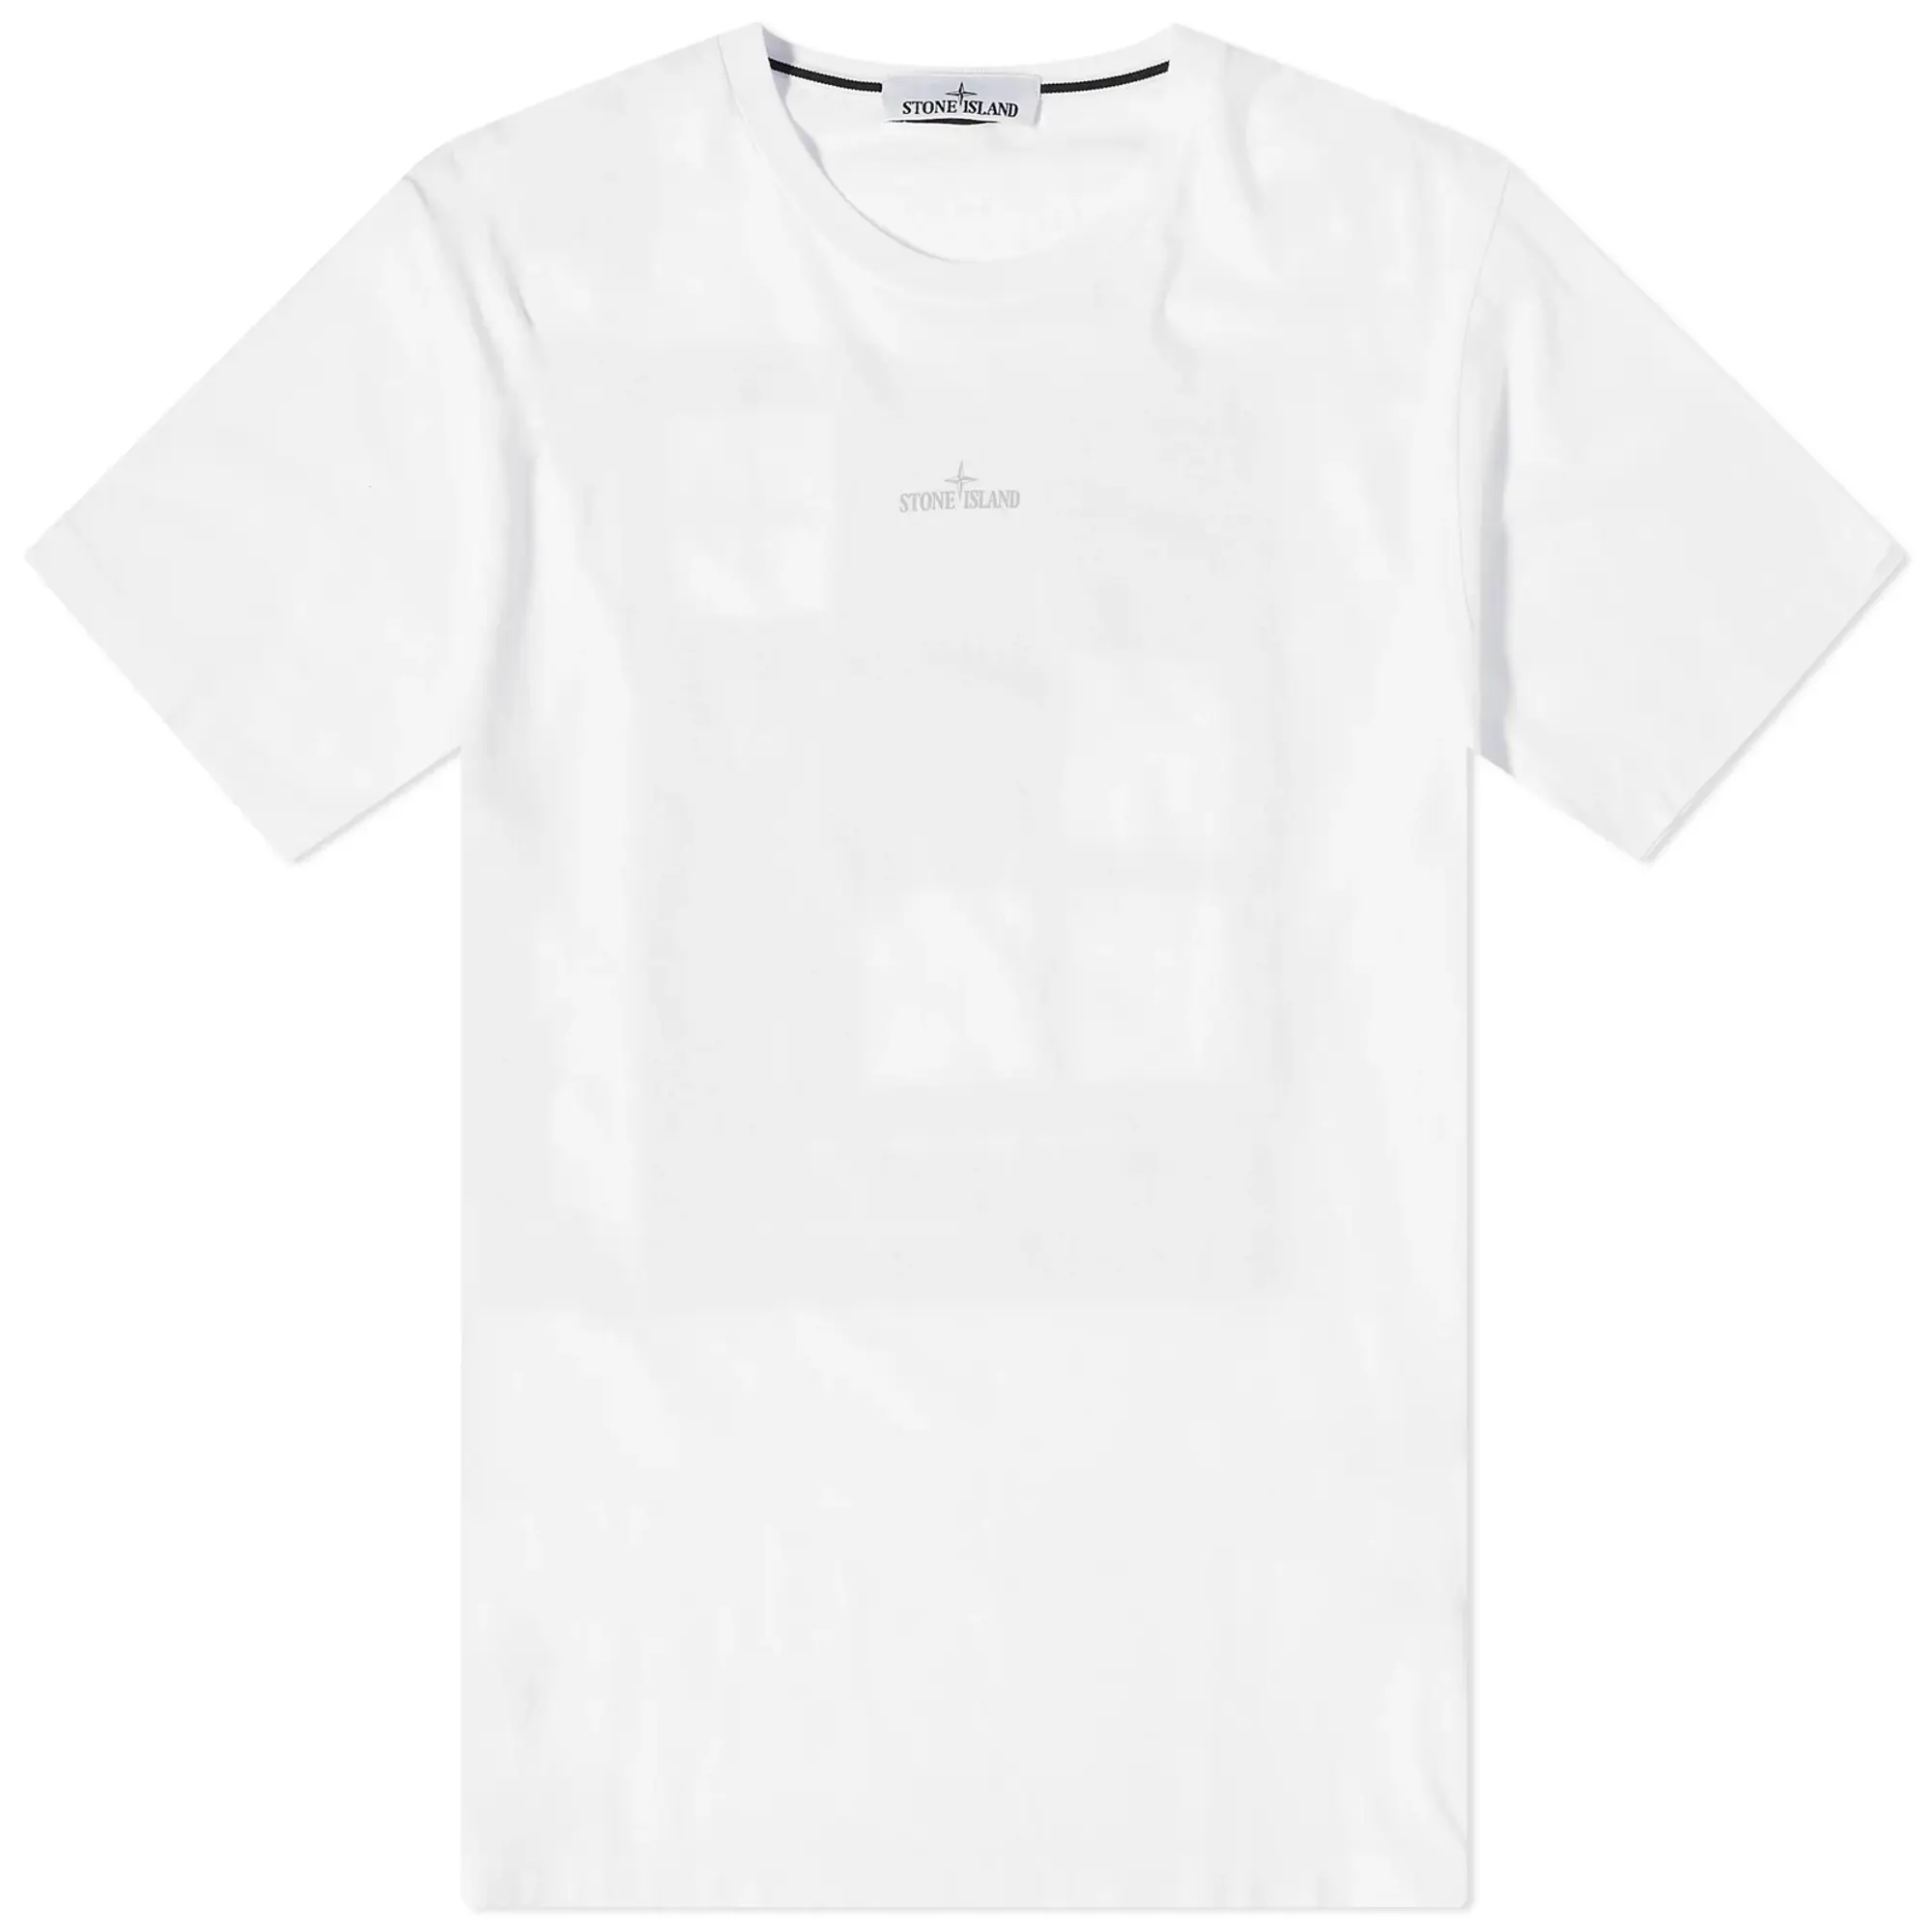 Stone Island Men's Abbreviation Three Graphic T-Shirt White